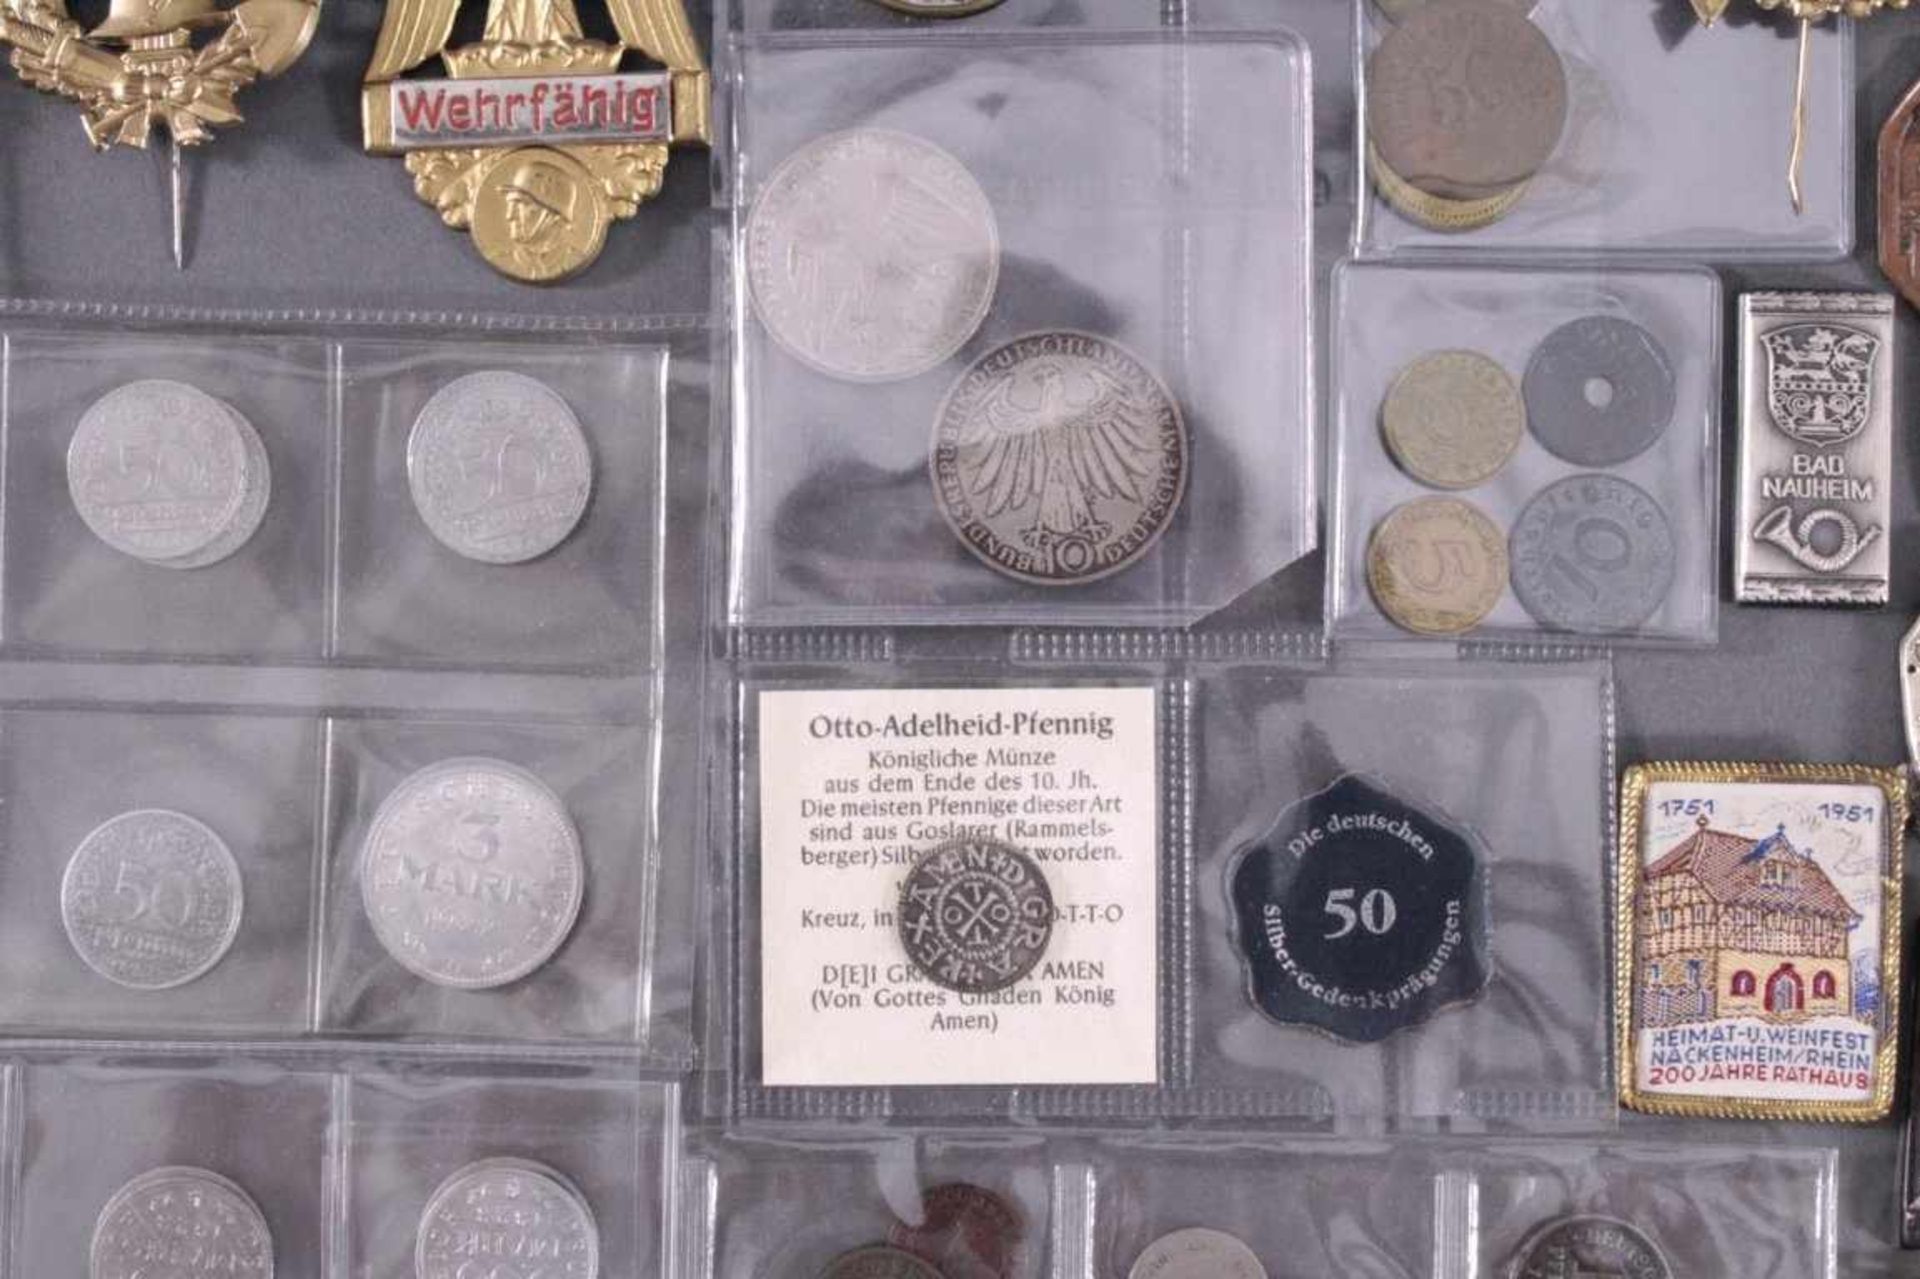 Münzen, Tagungs- und Veranstaltungsabzeichen Bad NauheimCa. 85 Stück, aus Metall, Porzellan, Holz, - Bild 4 aus 5